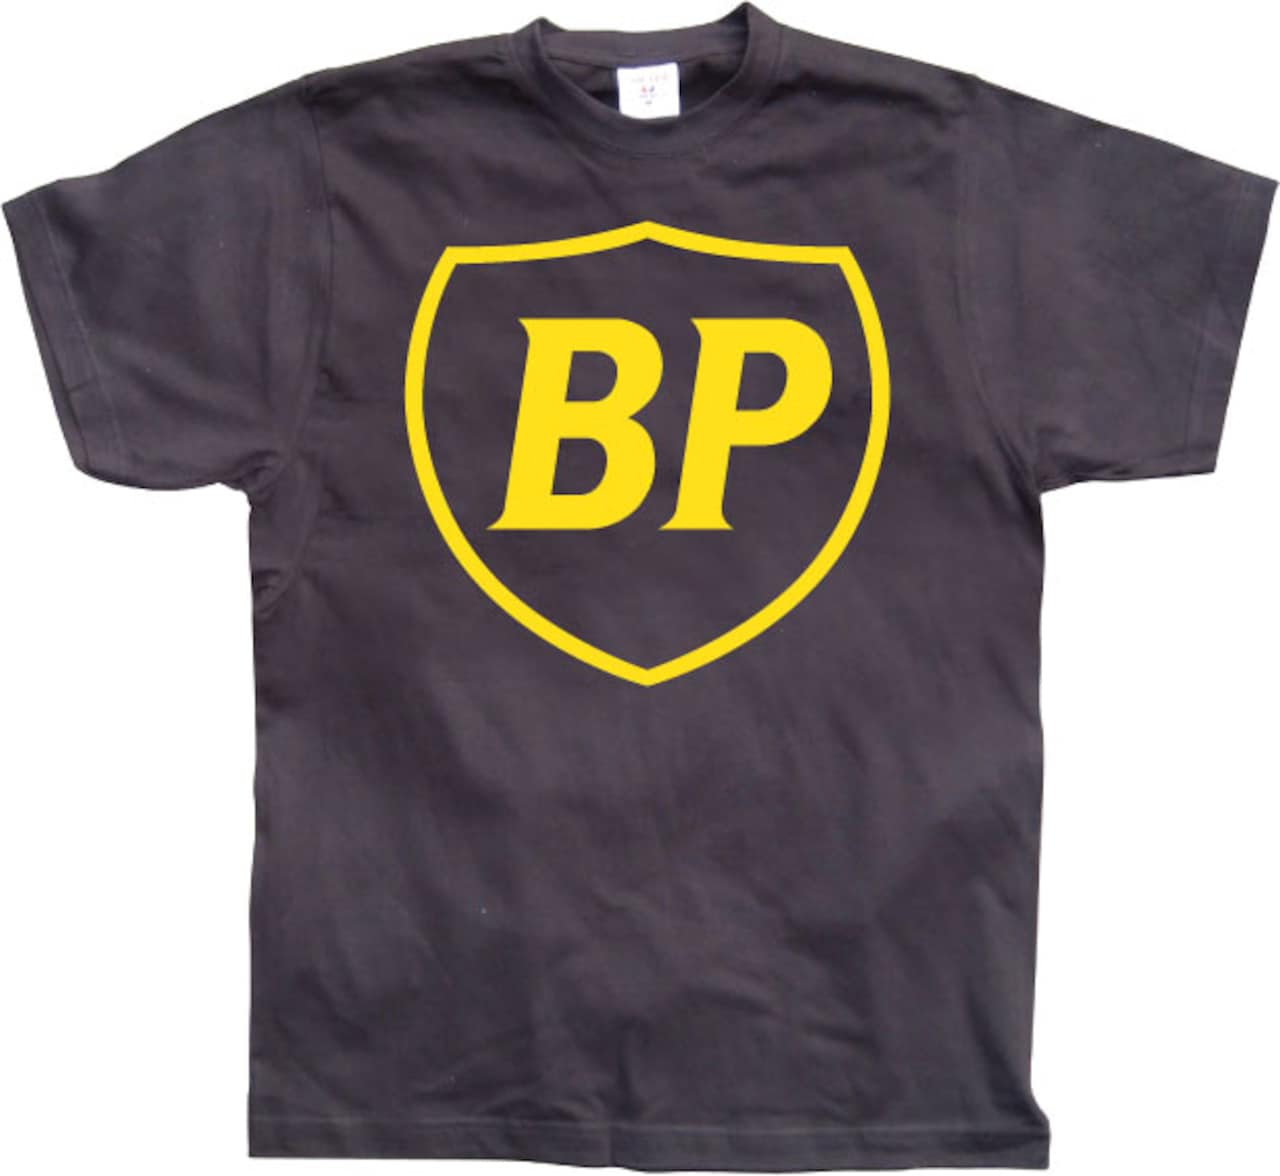 bp tour 2010 shirt